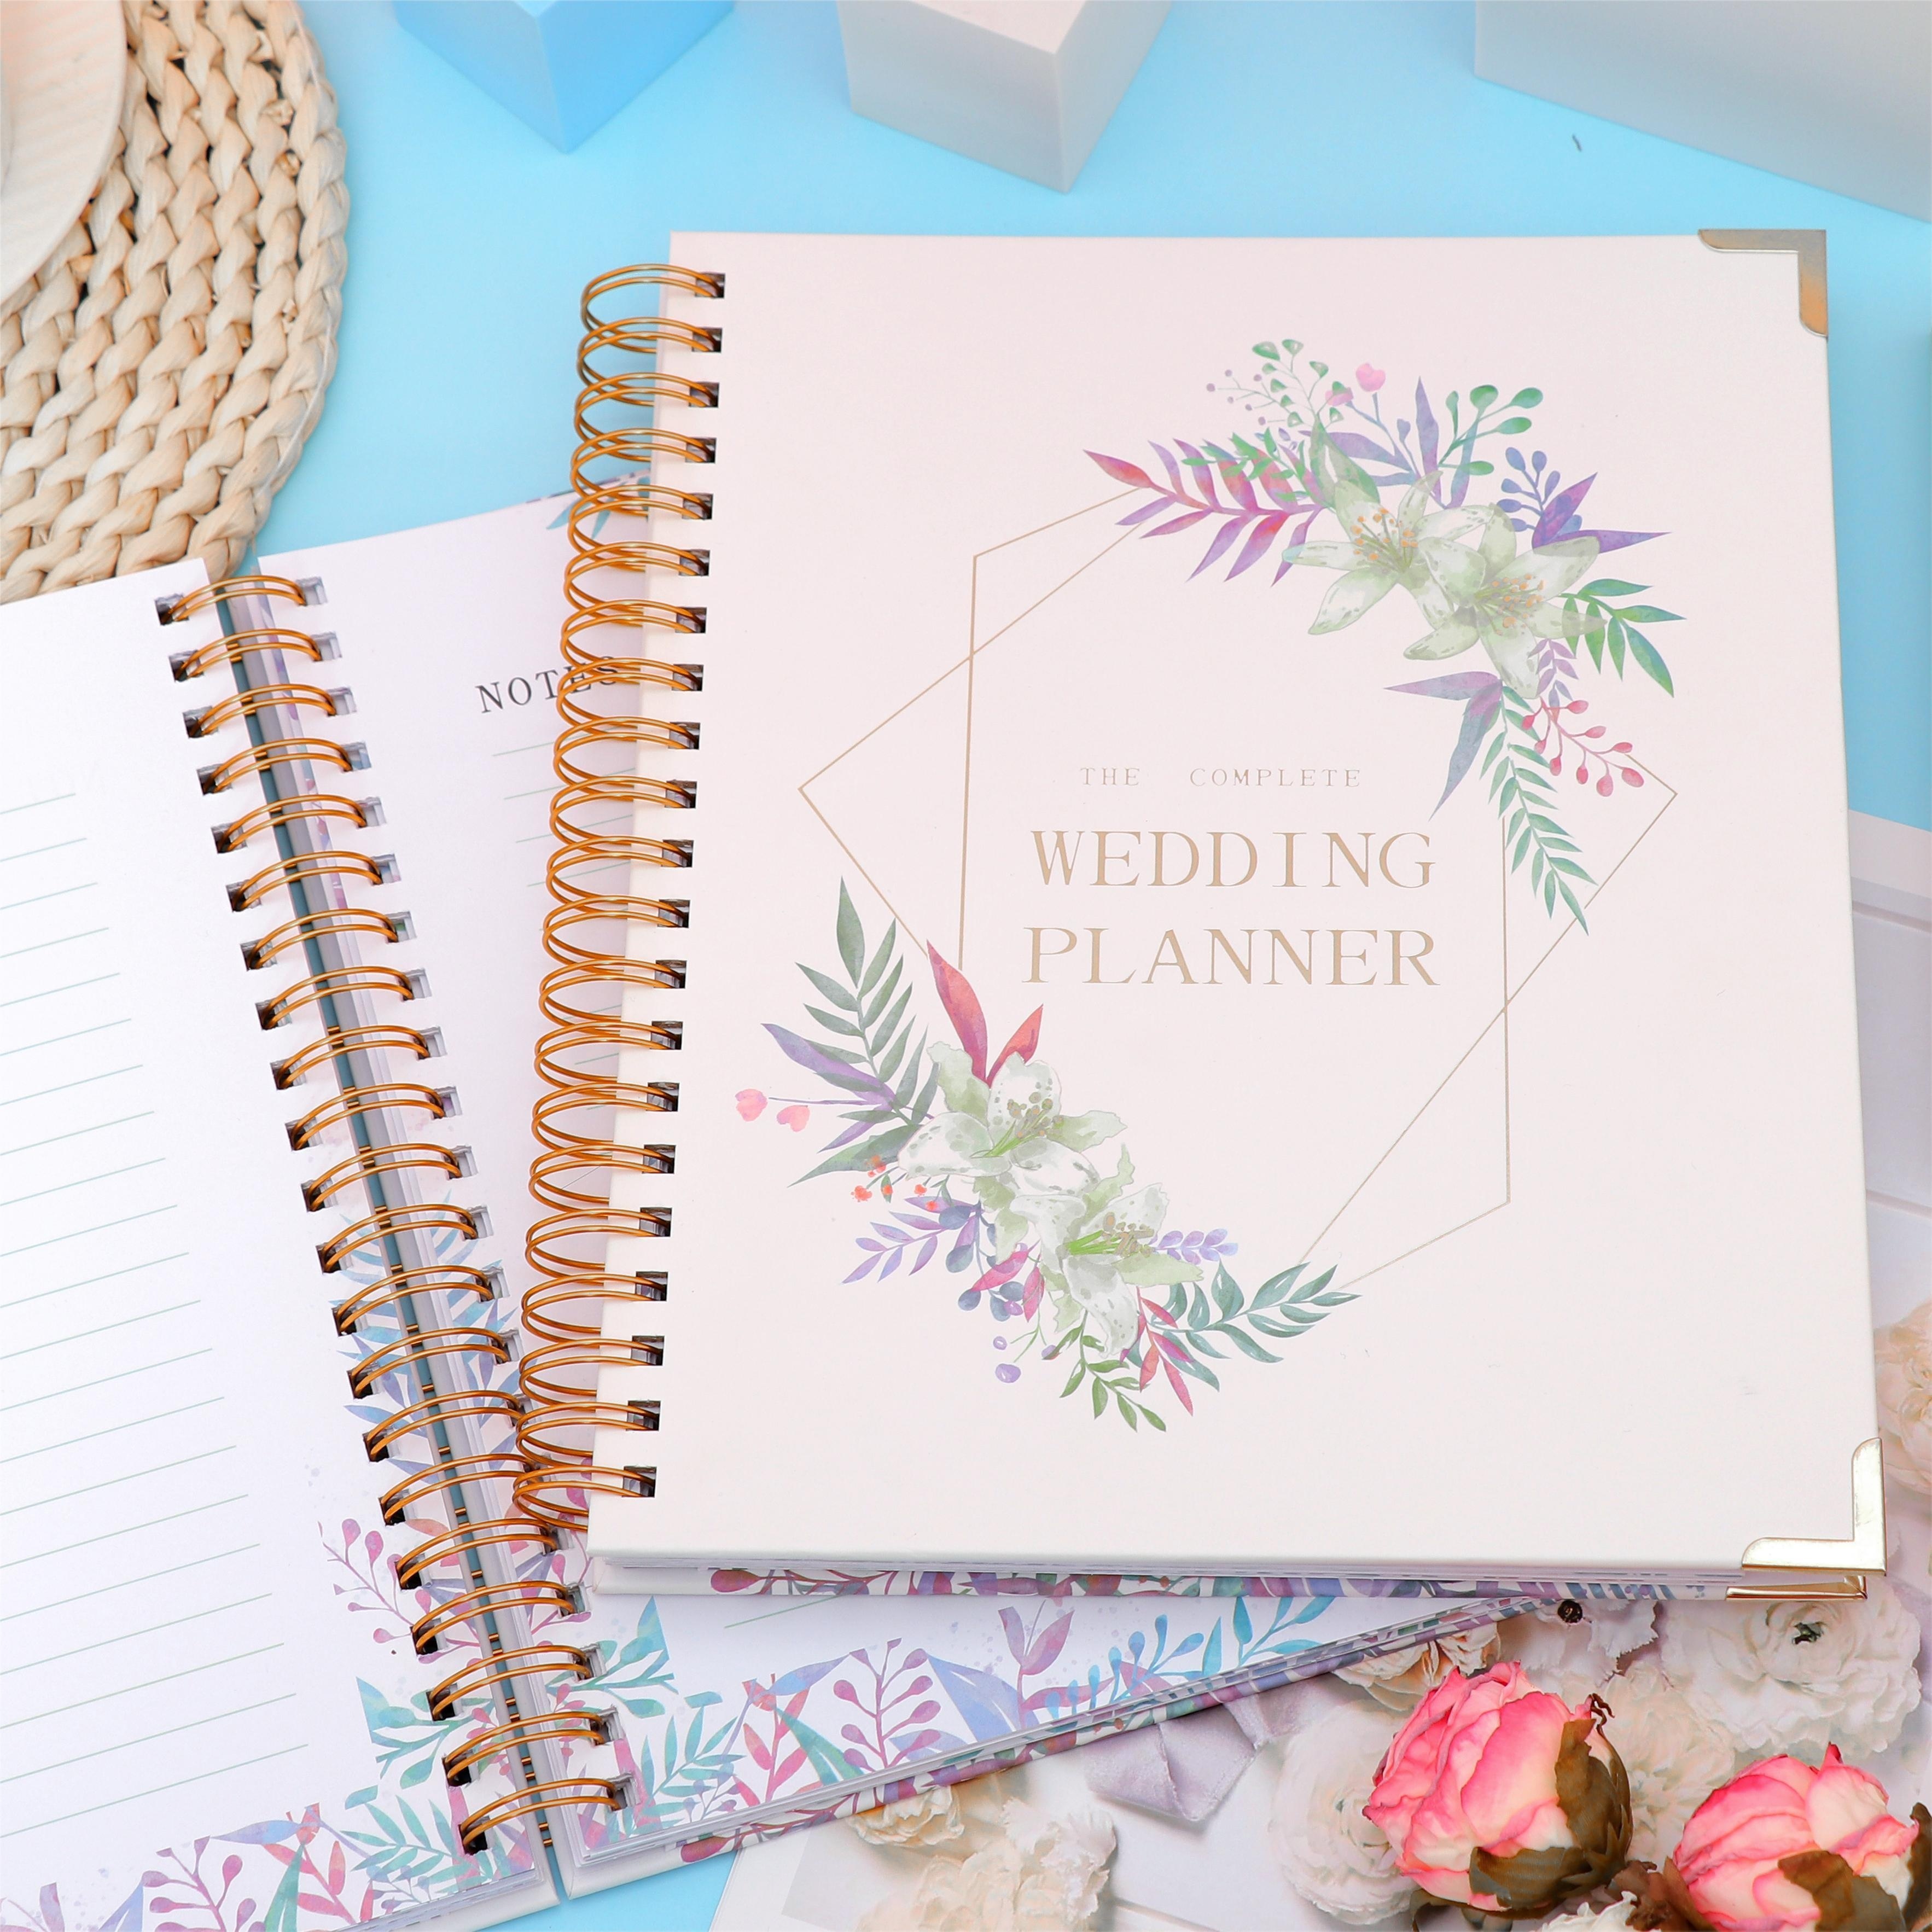  Complete Wedding Planner Organizer - Elegant